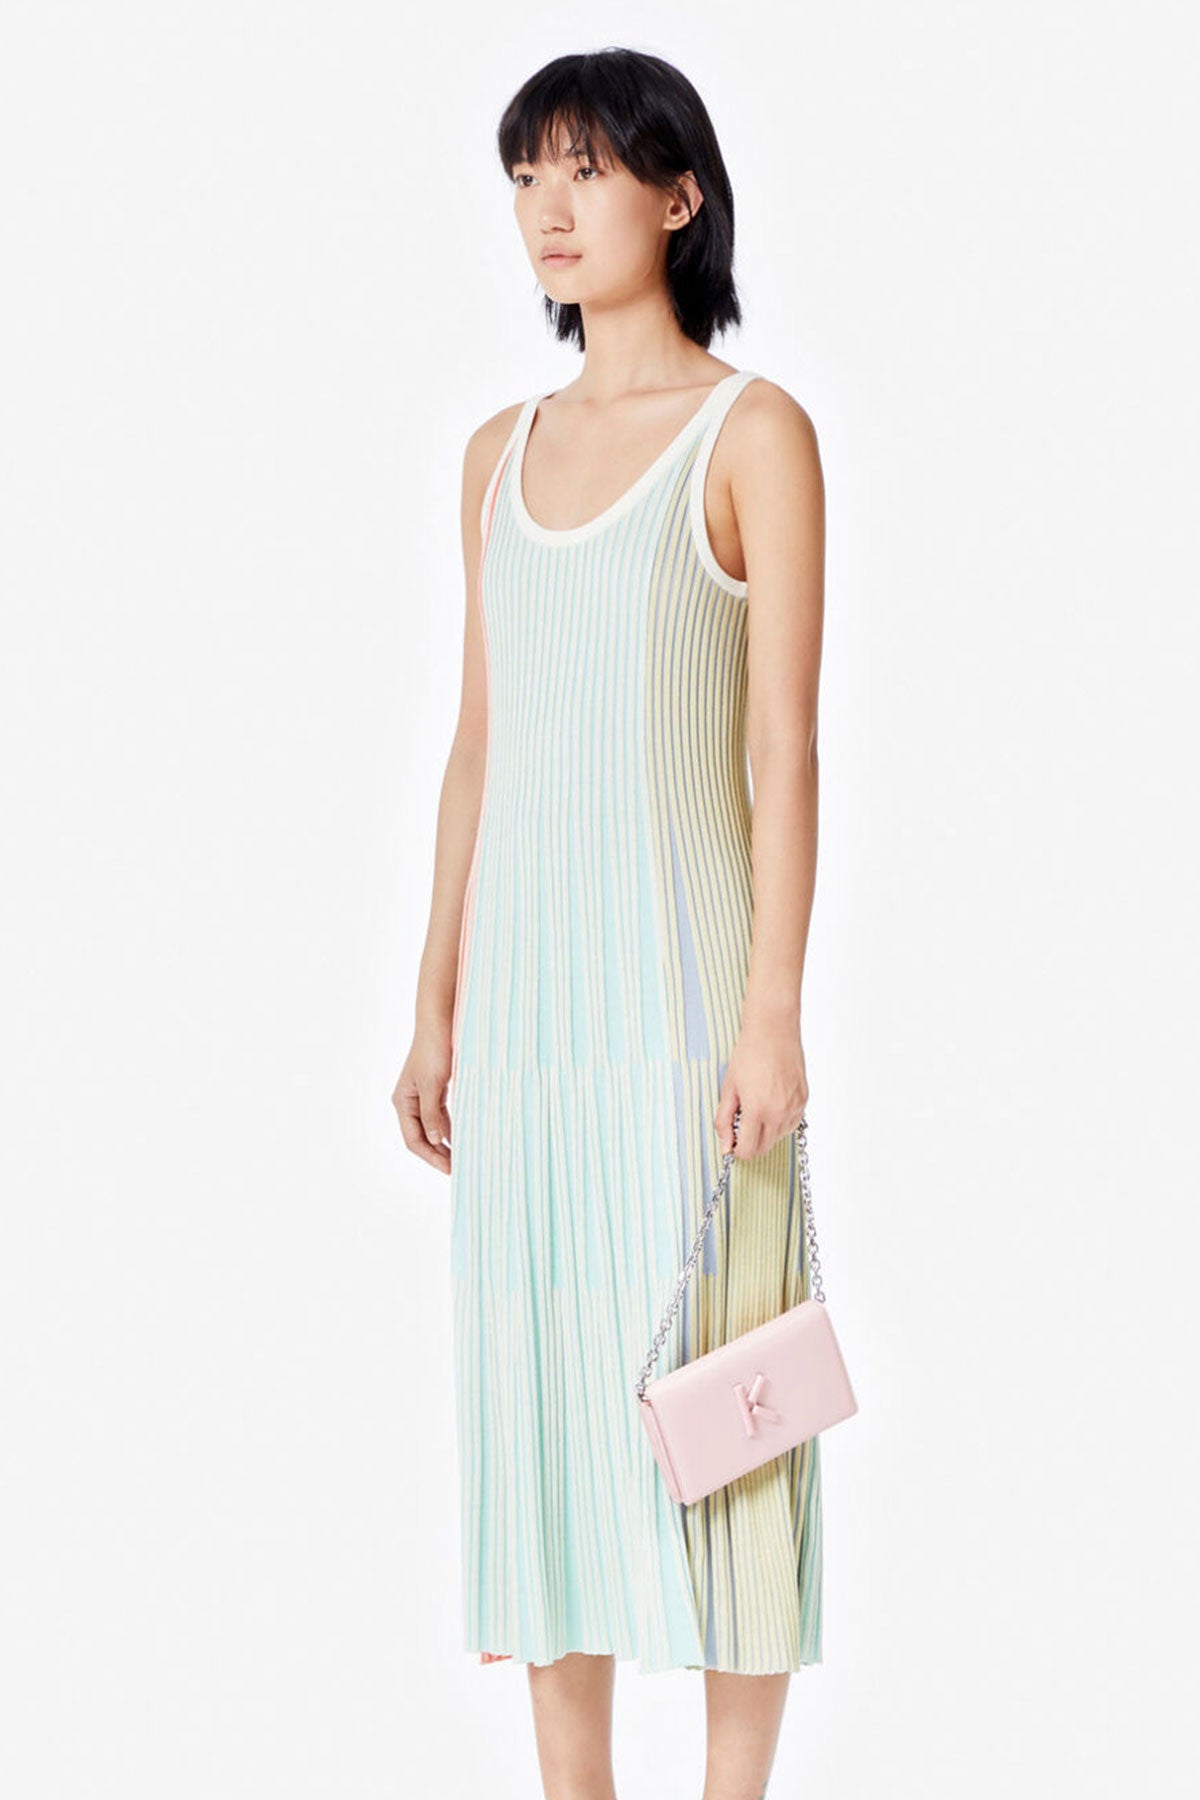 Kenzo Elbise-Libas Trendy Fashion Store